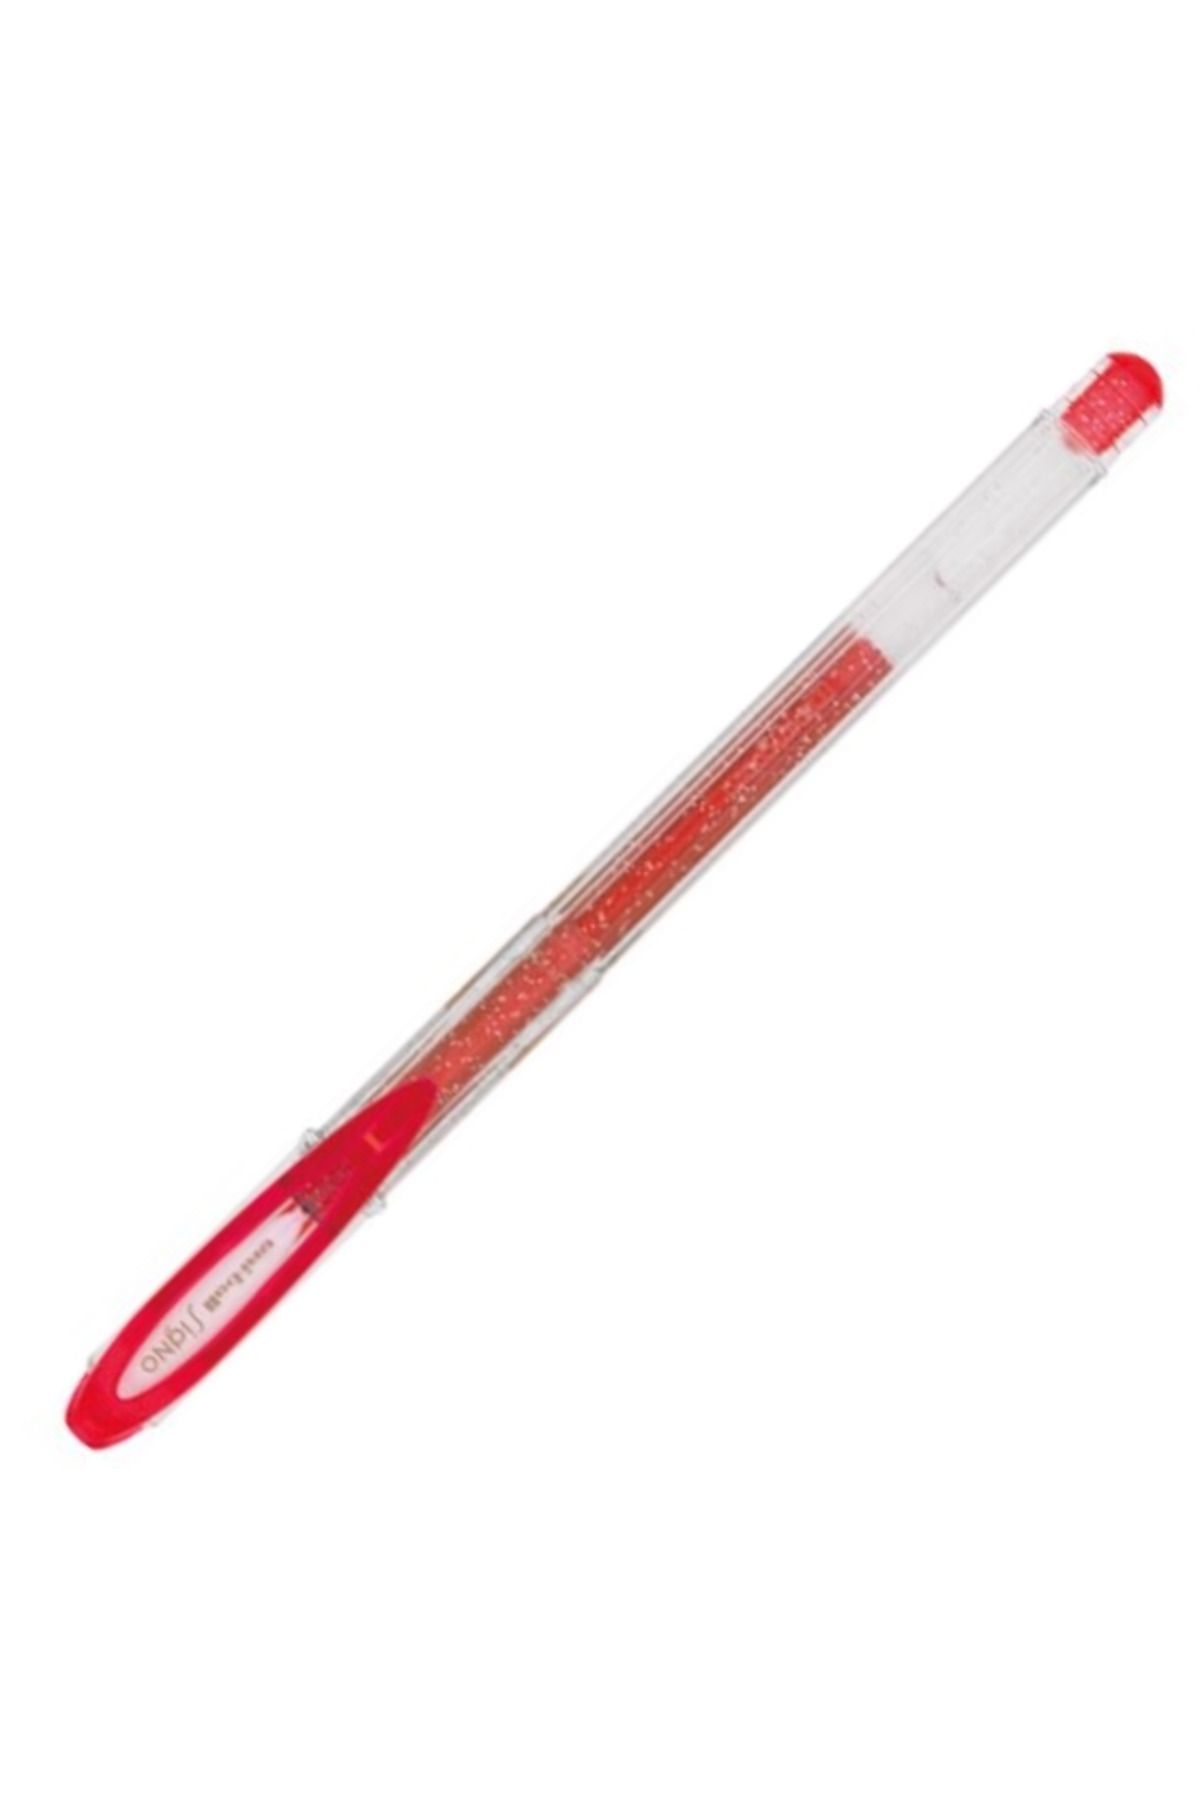 Uni Jel Kalem Sıgno Sparklıng Um-120sp 1.0 Kırmızı 12 Adet